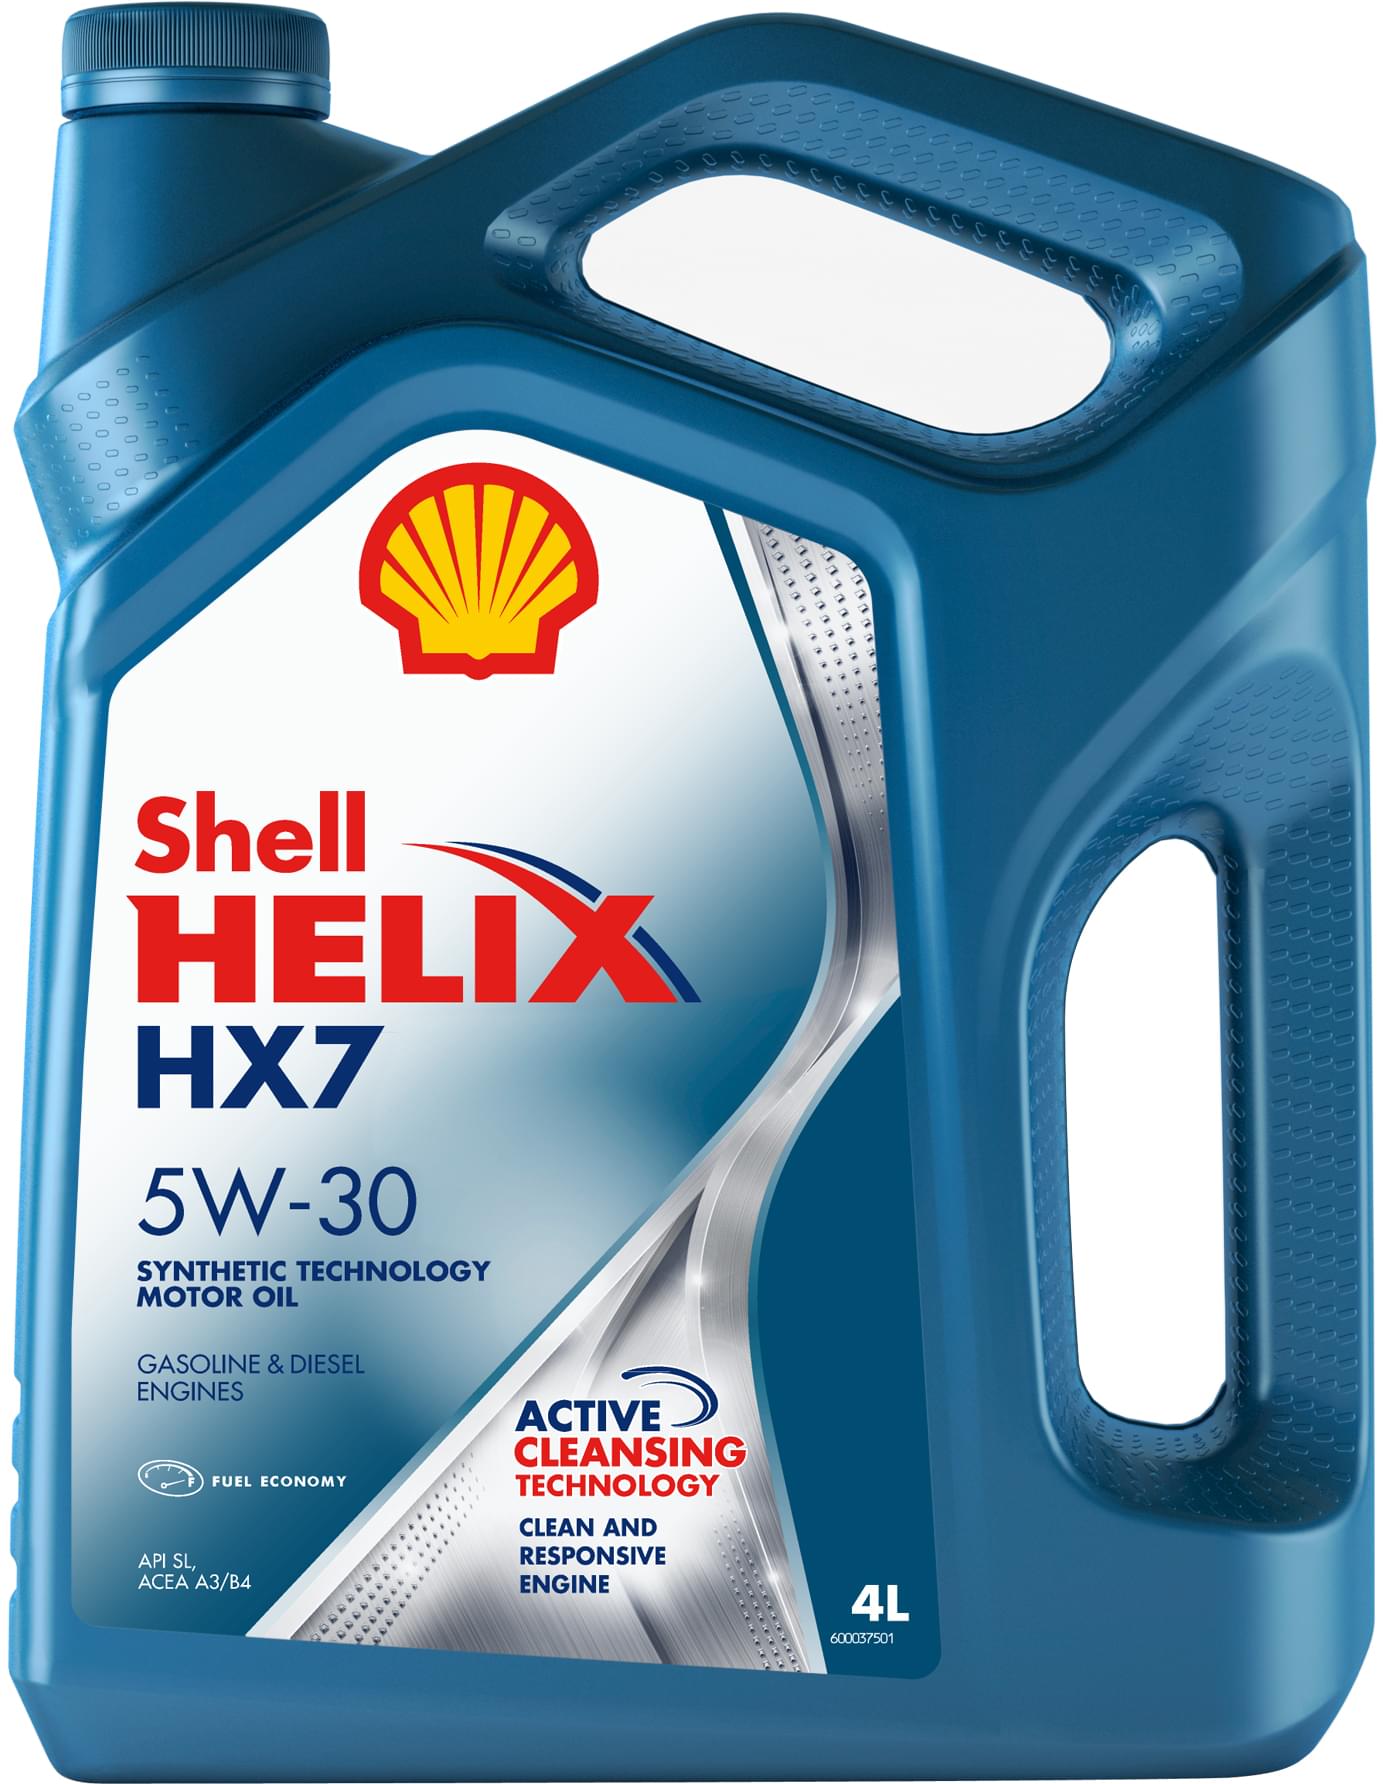 Обзор масла SHELL Helix HX7 5W-30 - тест, плюсы, минусы, отзывы, характеристики